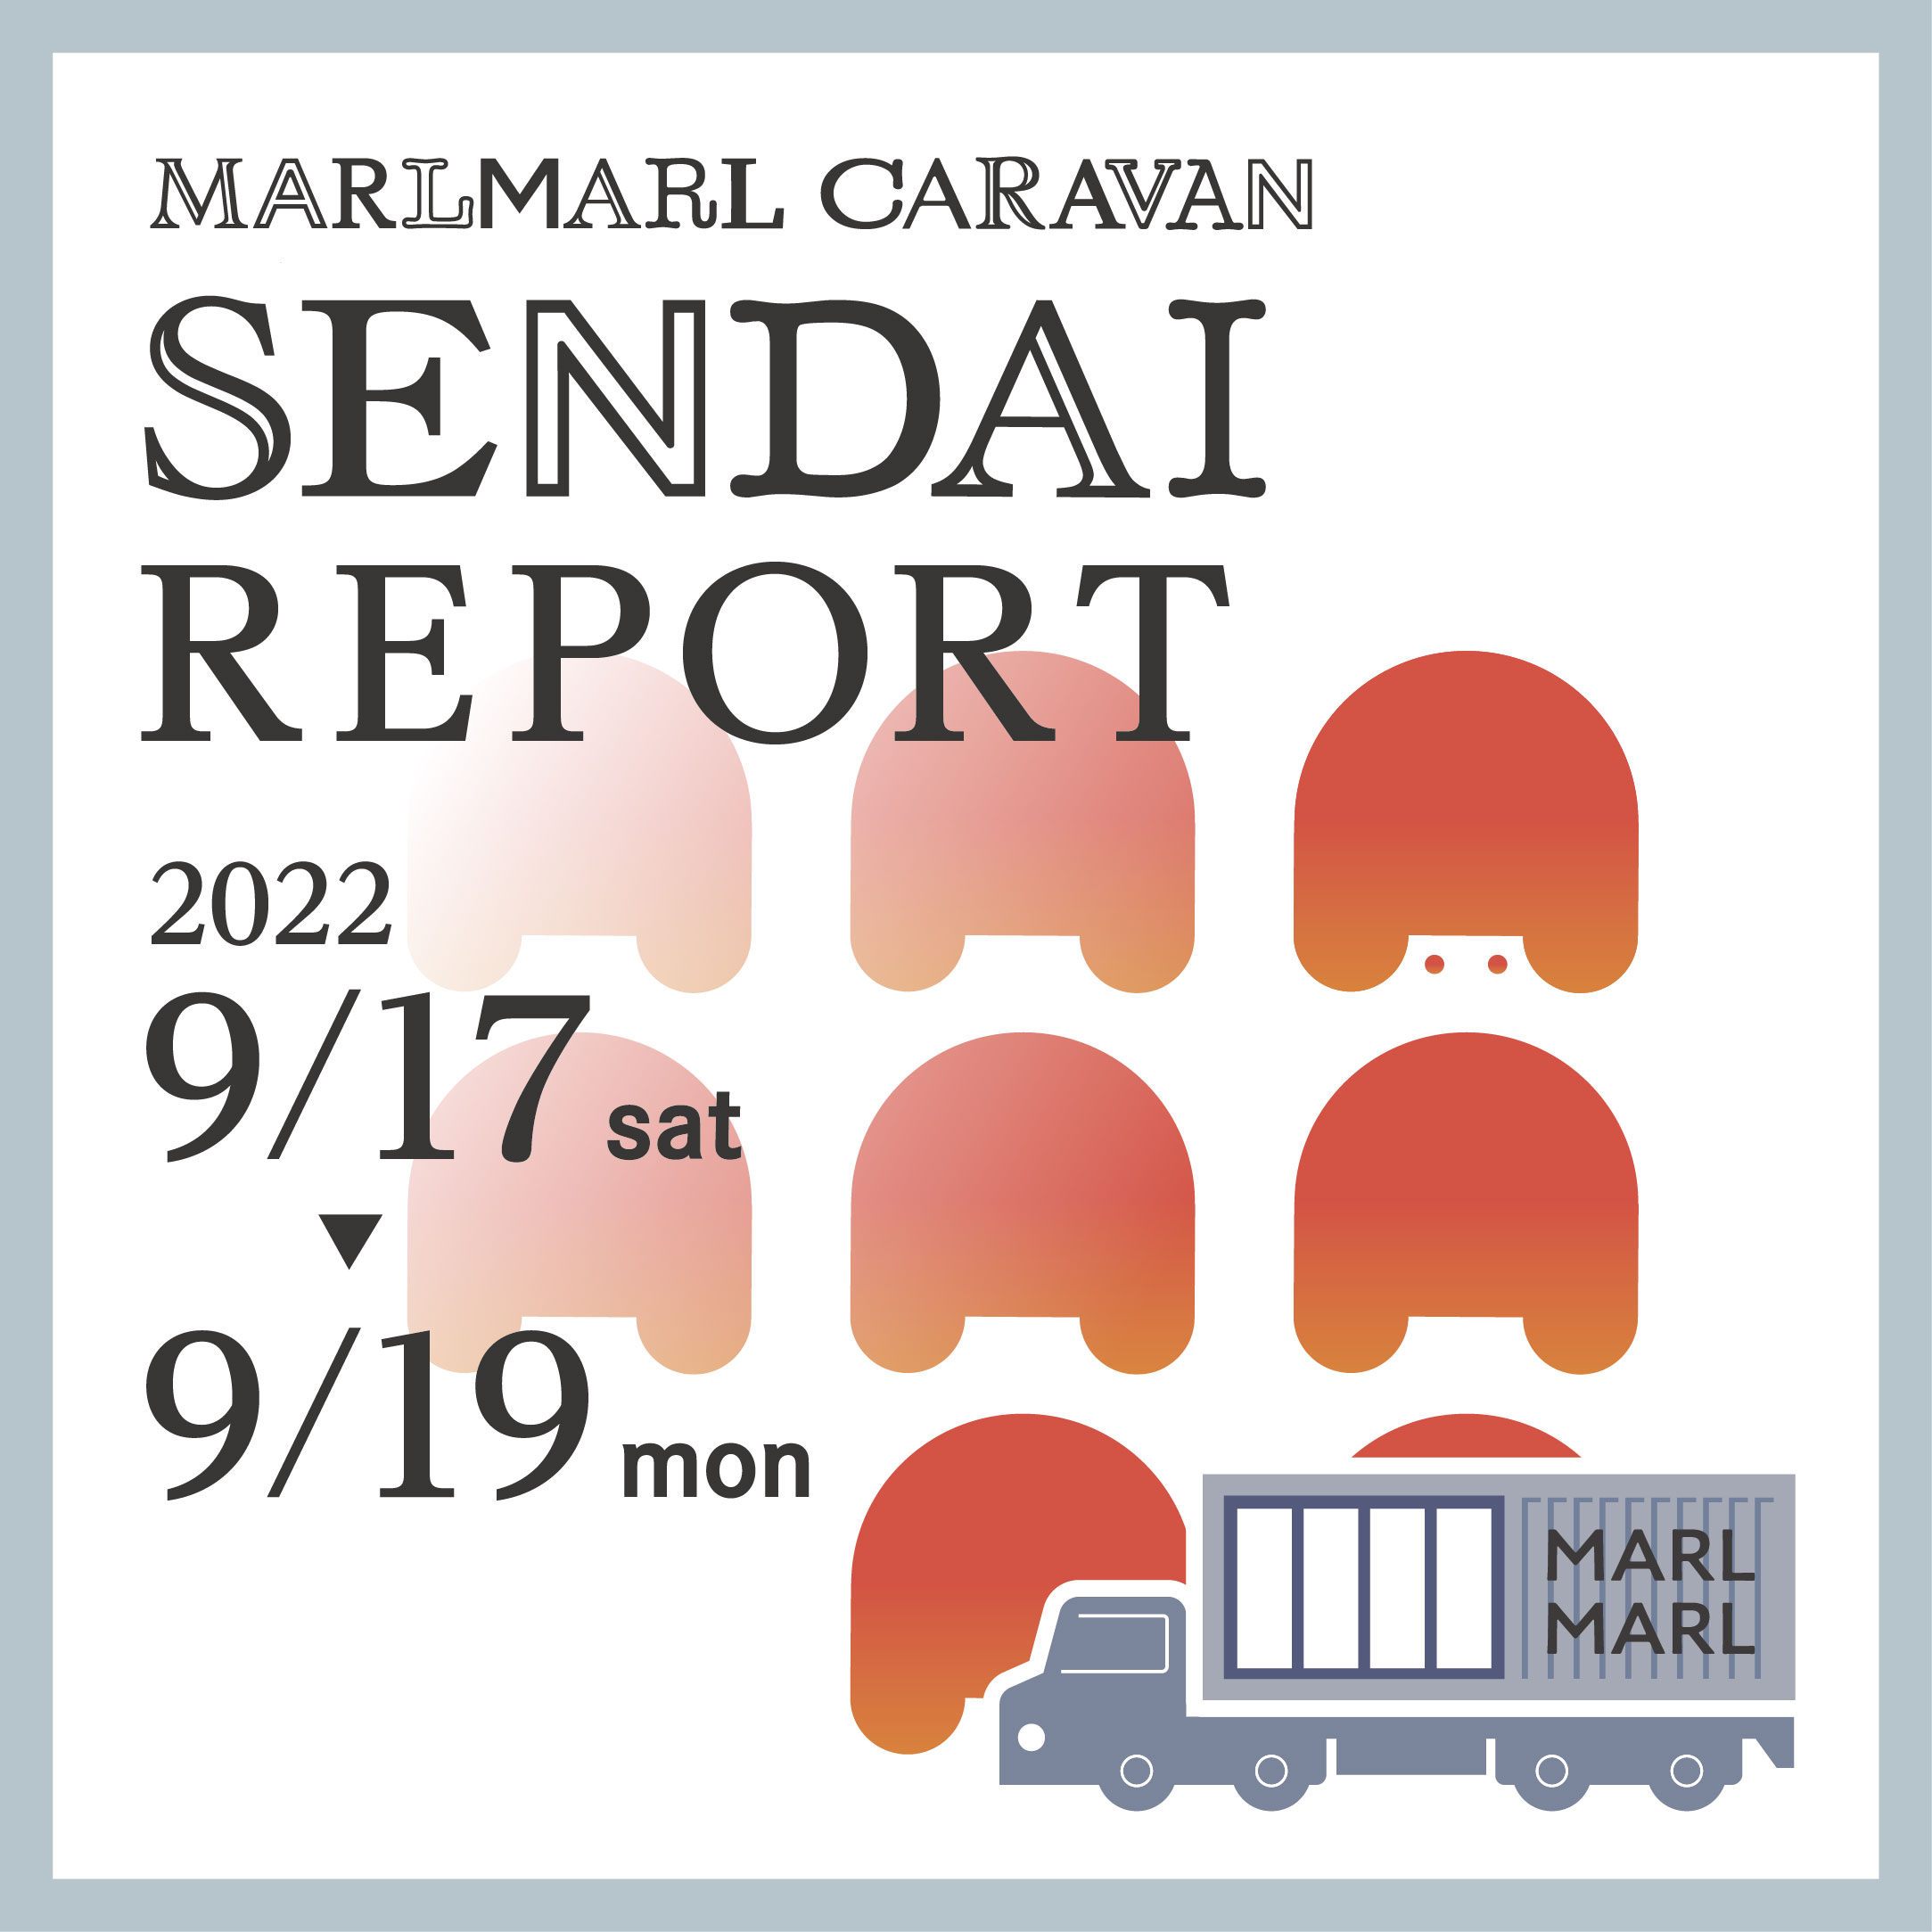 《仙台Report》MARLMARL CARAVAN 9.27(TUE.)